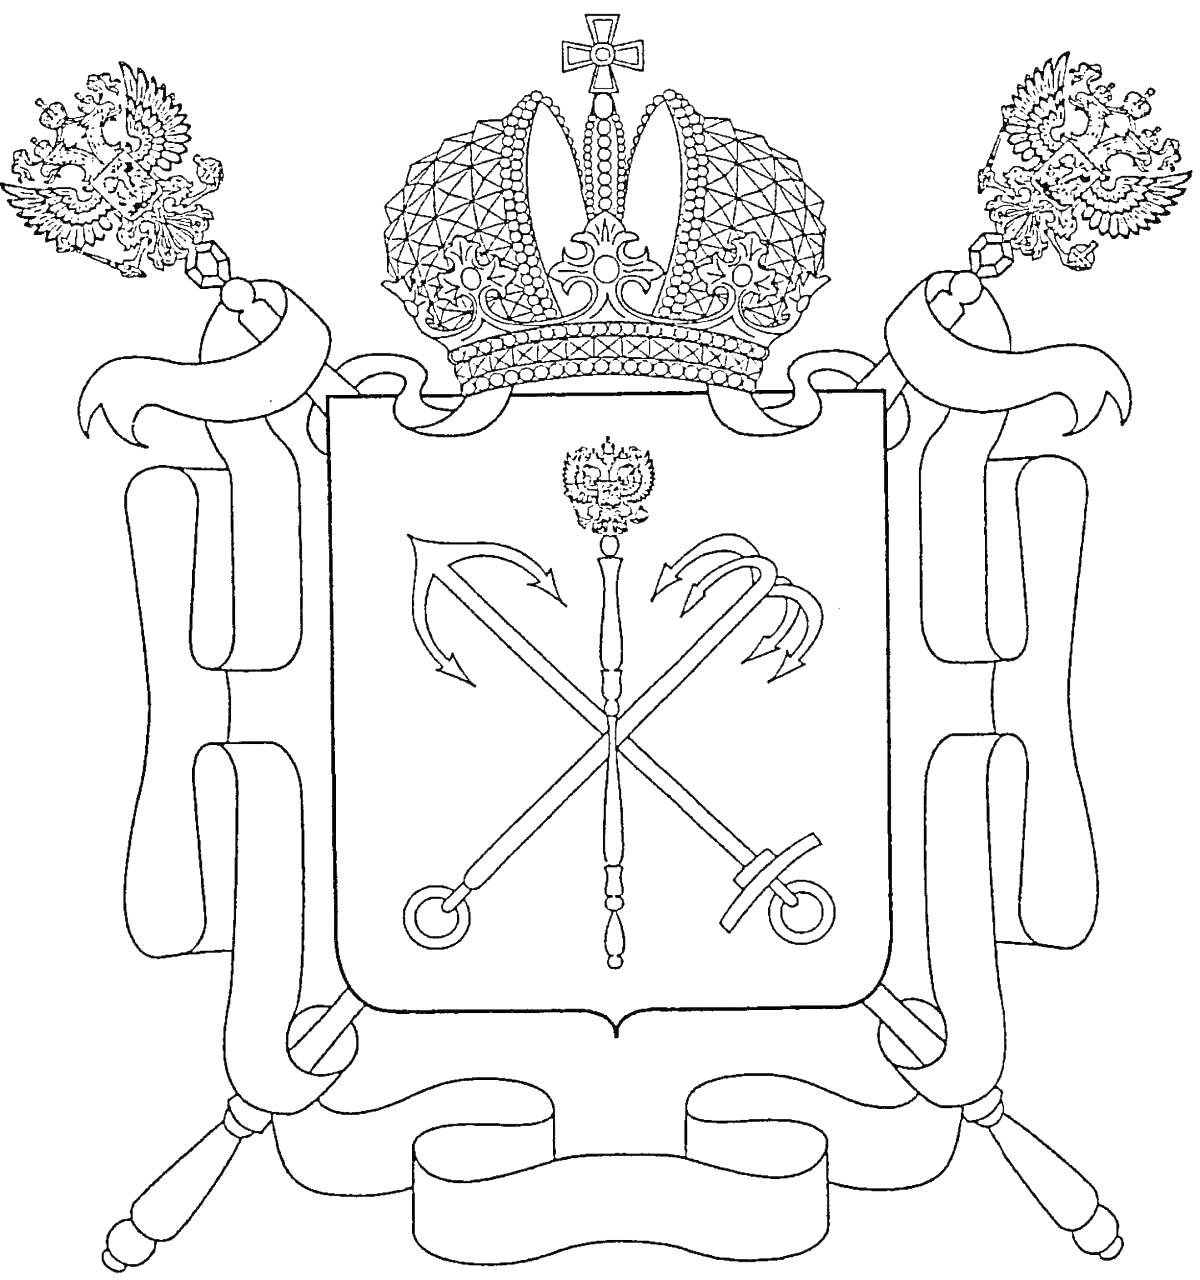 Раскраска Герб Санкт-Петербурга. На изображении нарисован герб Санкт-Петербурга - двуглавый орел с короной, держащий символы власти, щит с перекрещенными скипетром, жезлом и якорями, увенчанный короной и оформленный лентами.